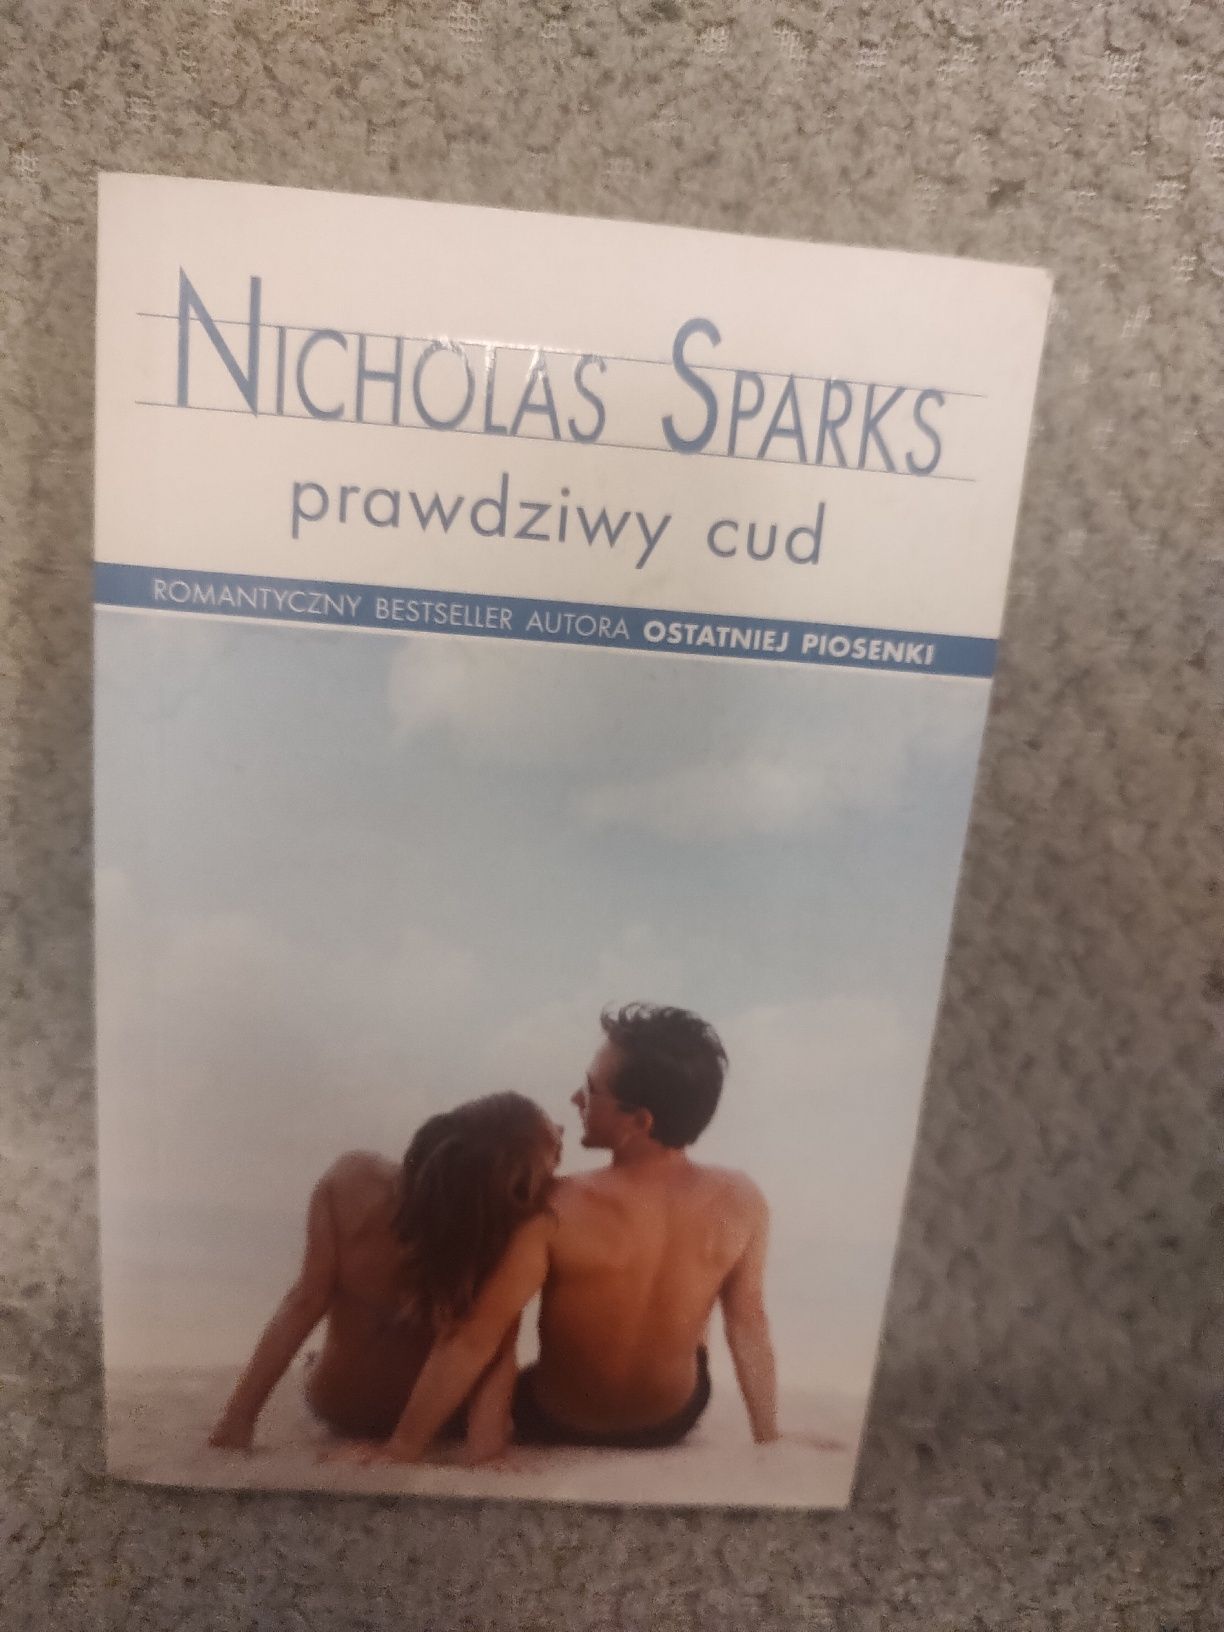 Książka Nicholas Sparks "Prawdziwy cud"